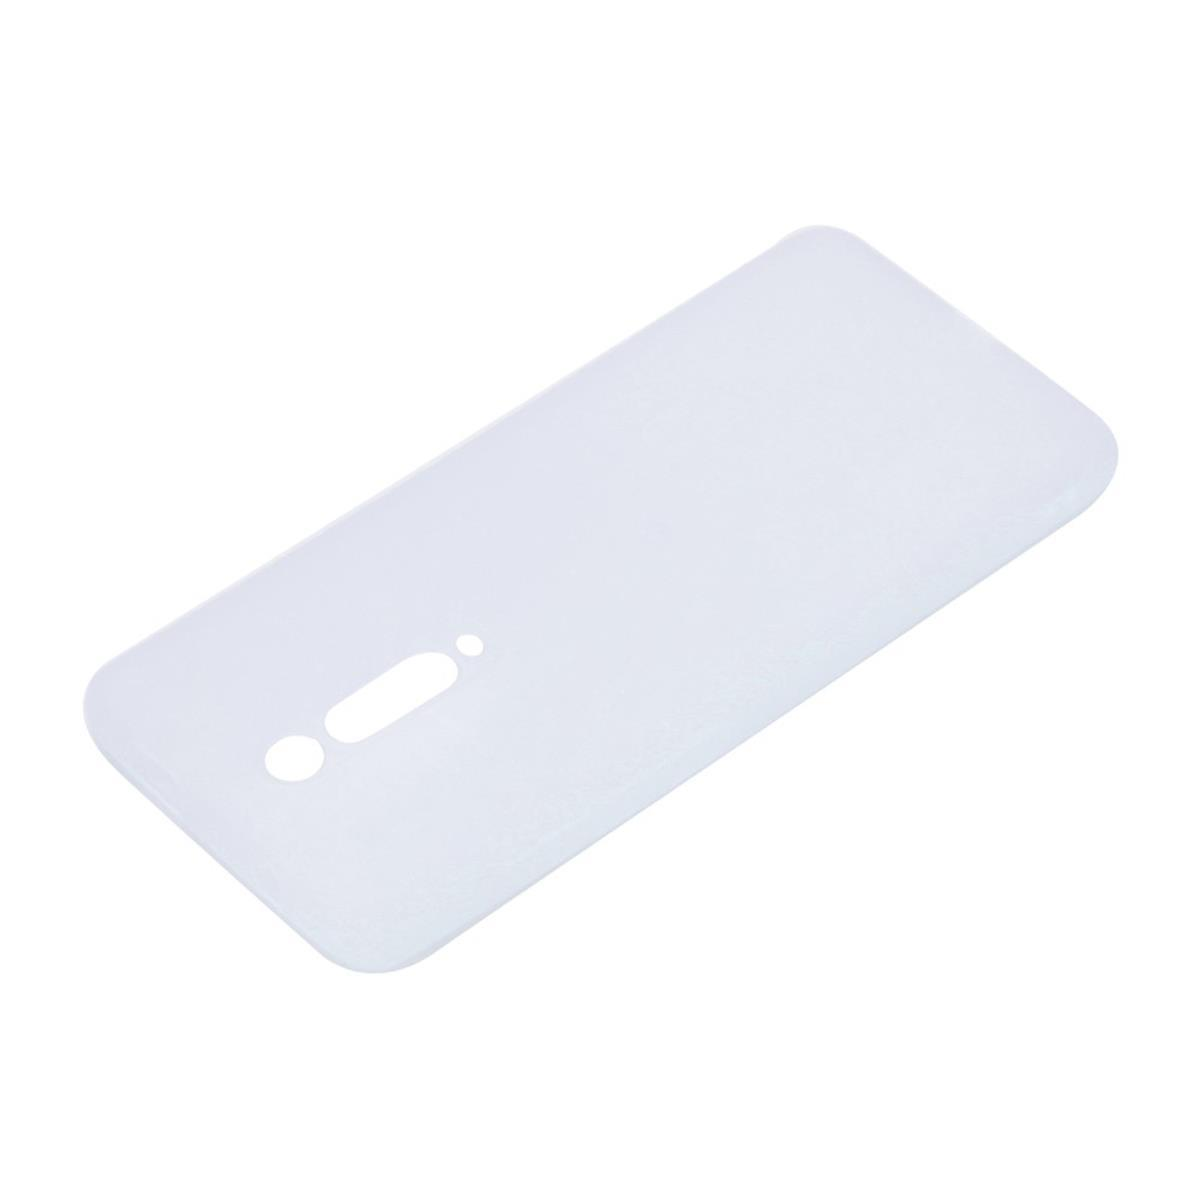 COVERKINGZ Handycase aus Silikon, Backcover, Xiaomi, Pro, 9T/Mi Mi 9T Weiß